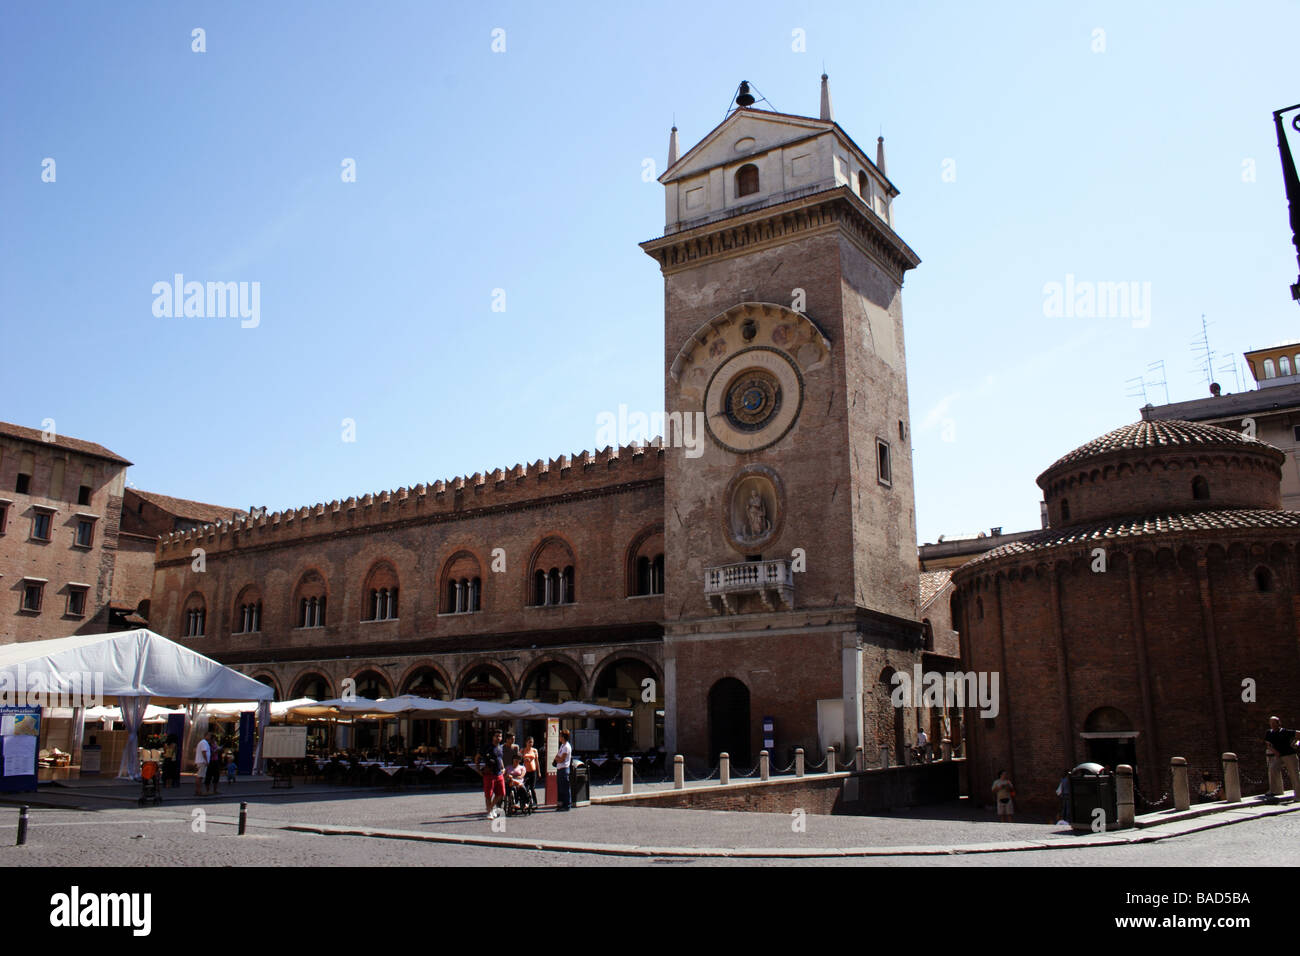 Mantova: Palazzo della Ragione-Piazza delle erbe Stock Photo - Alamy